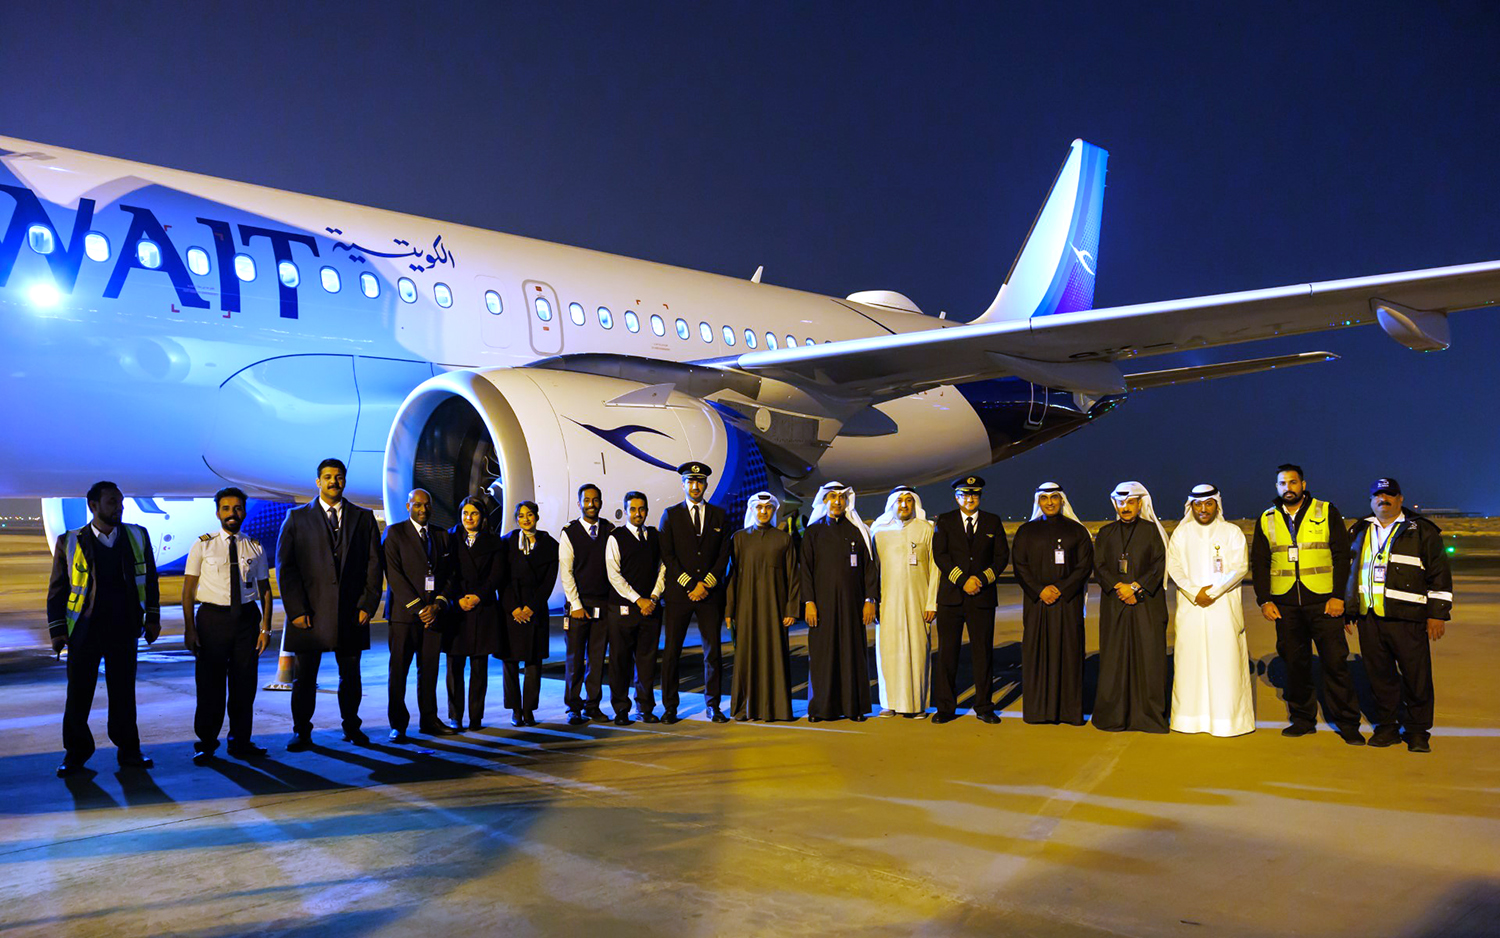 رئيس مجلس إدارة شركة الخطوط الجوية الكويتية يتوسط فريق الشركة مع الطائرة الجديدة (برقان)